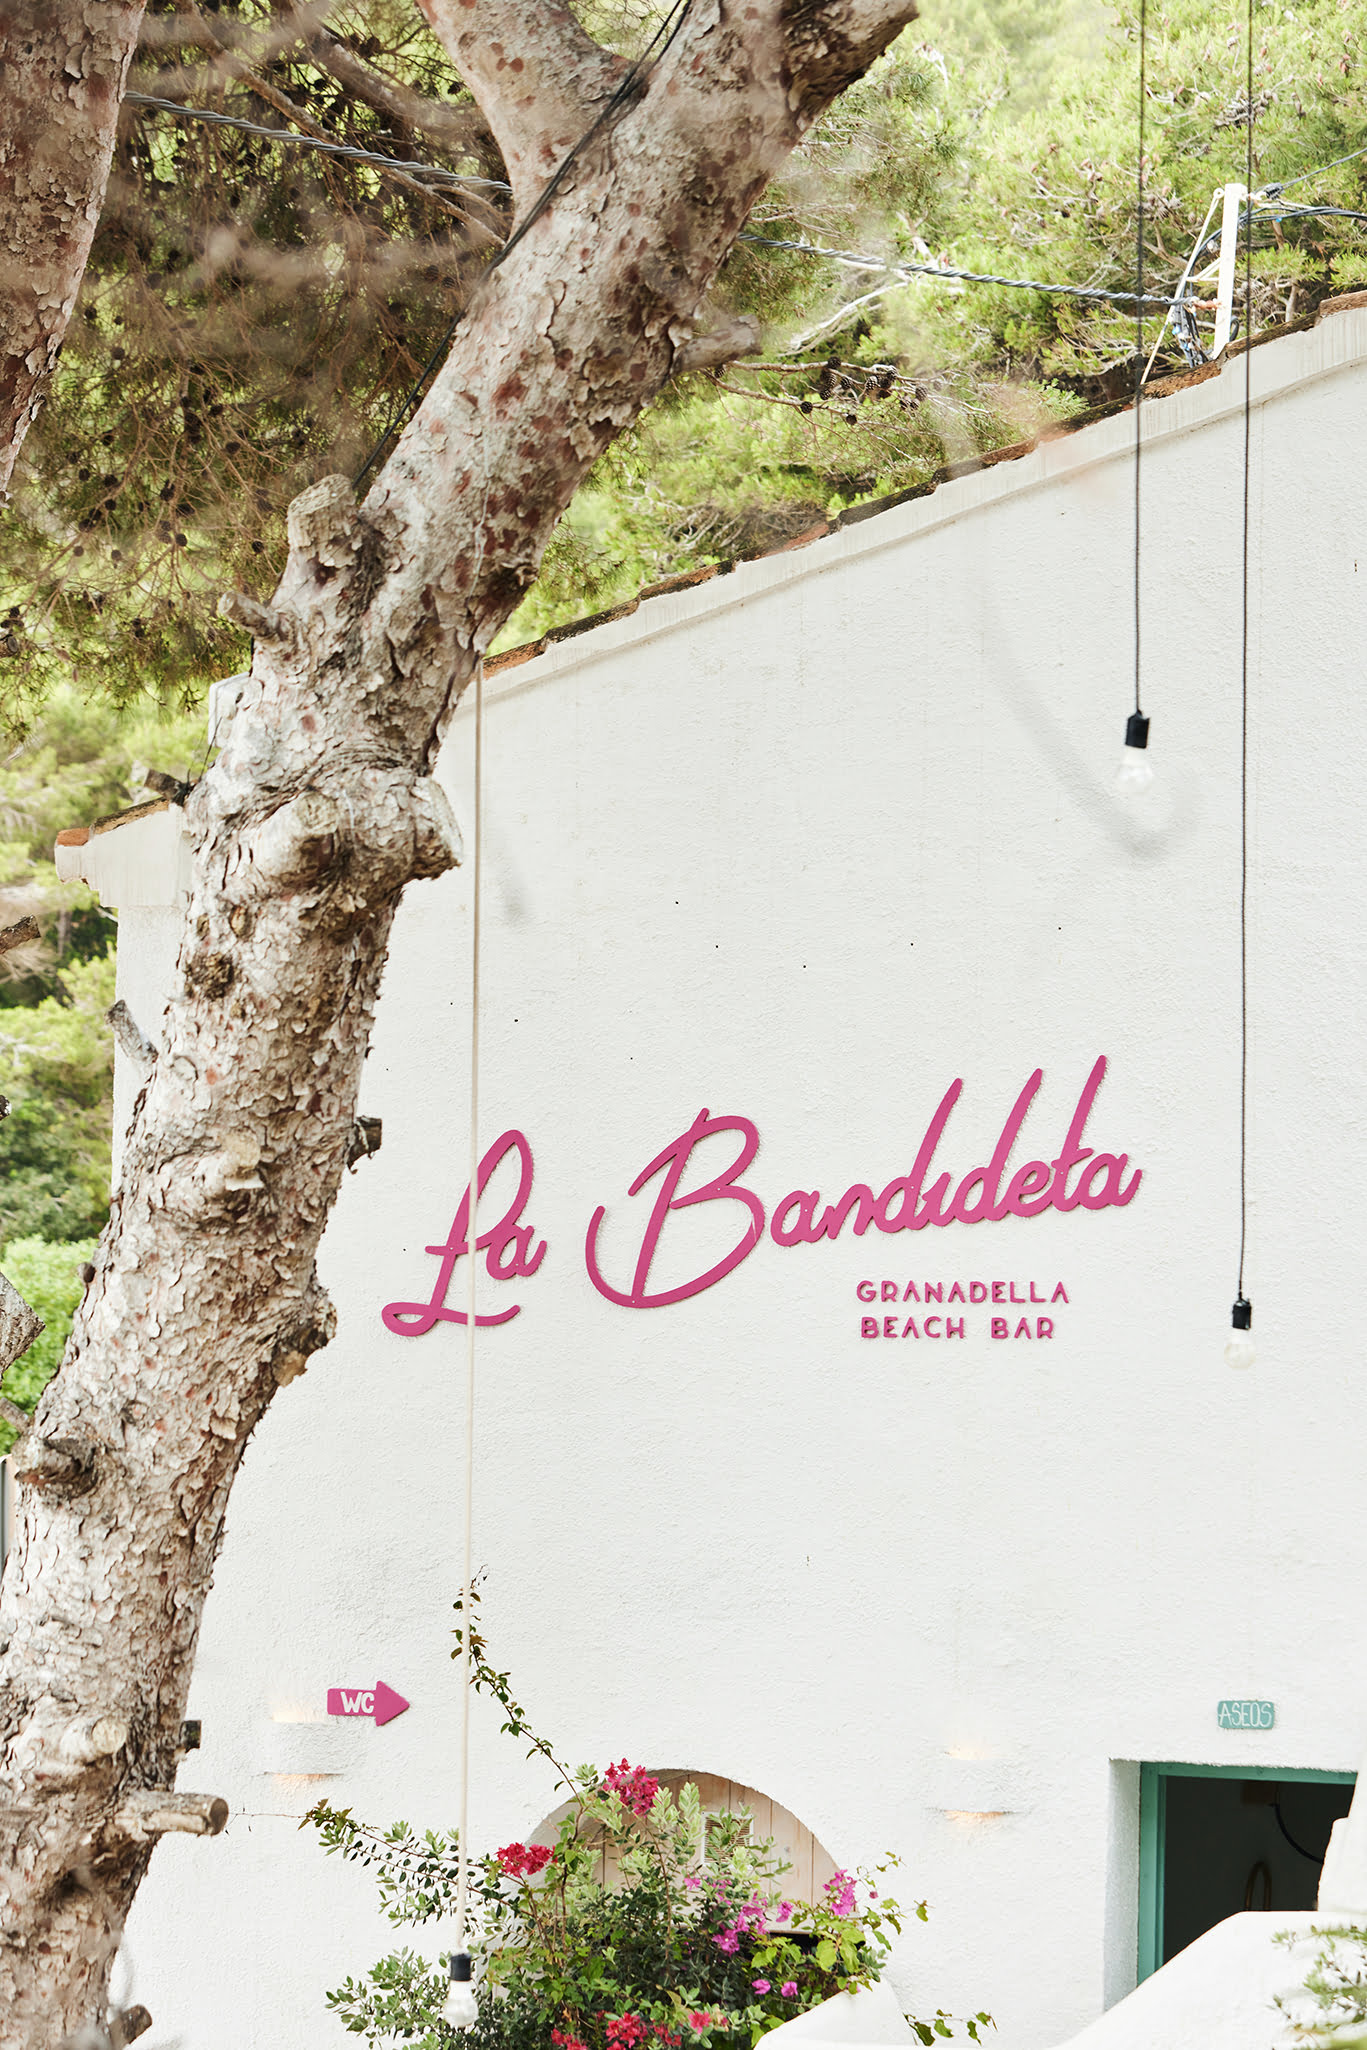 Restaurante La Bandideta